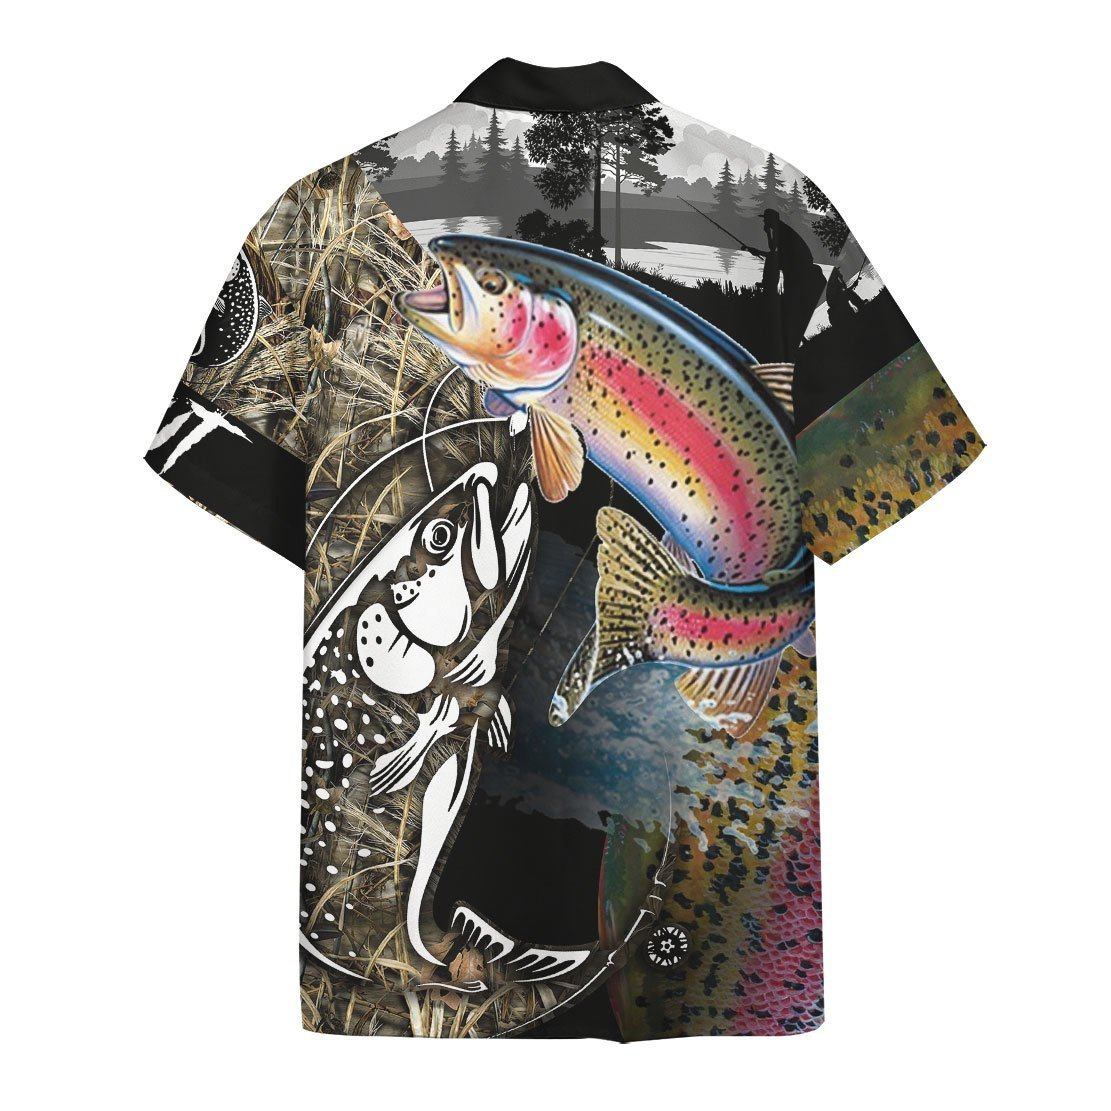 Trout Fish Hawaii Shirt